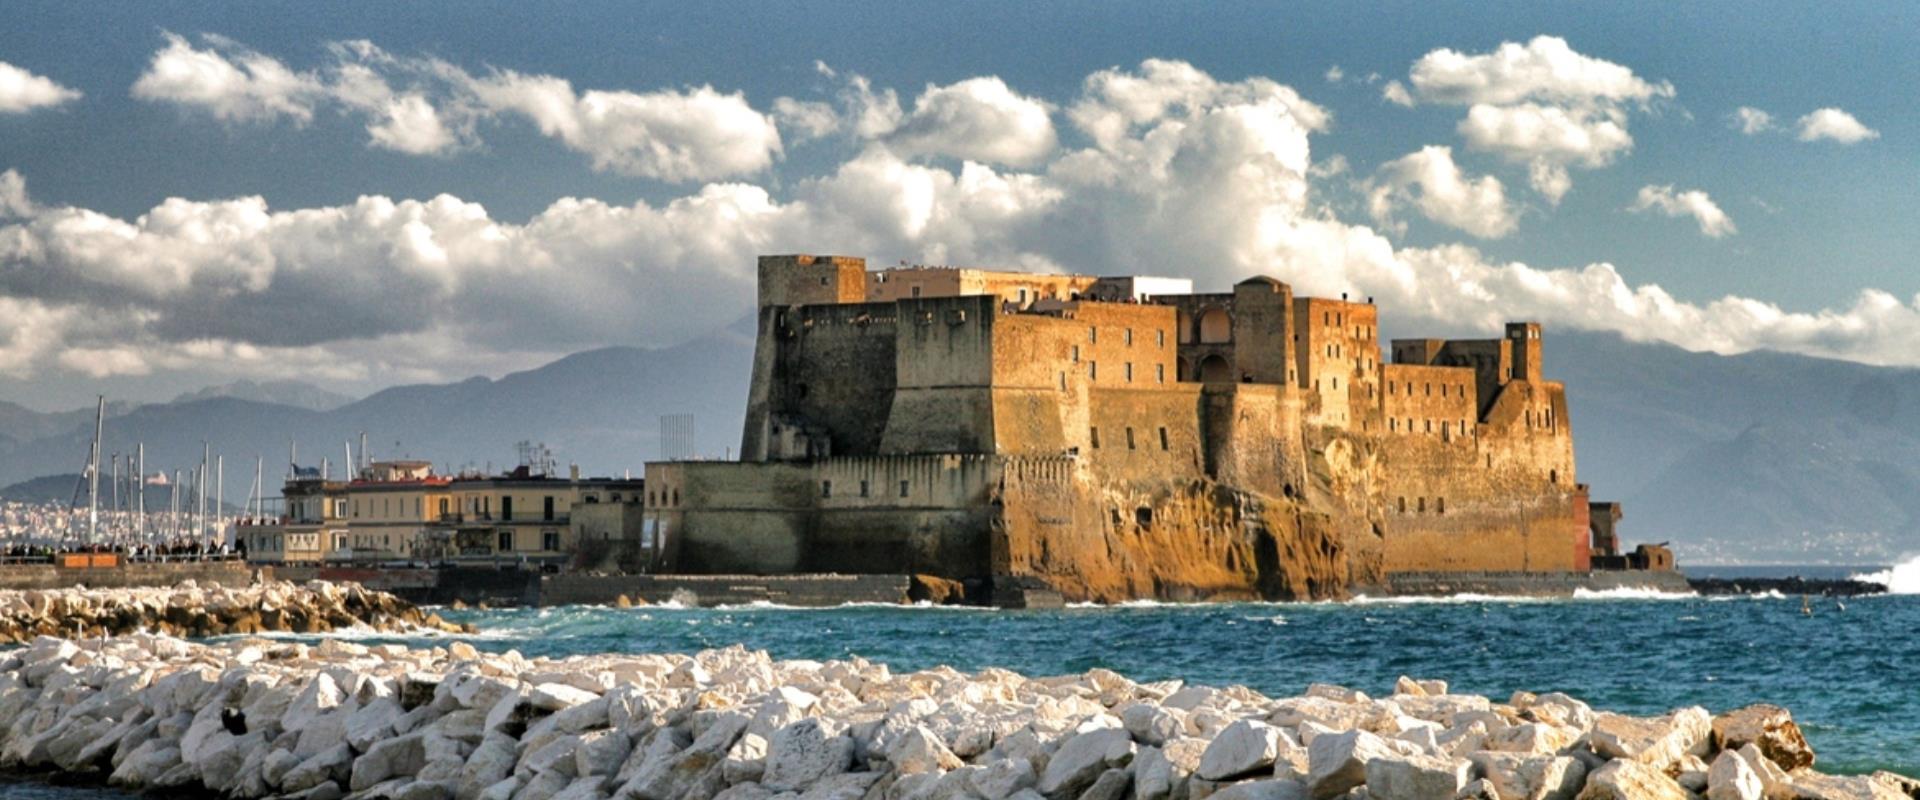 Il castel dell'Ovo è il castello più antico della città di Napoli ed è uno degli elementi che spiccano maggiormente nel celebre panorama del golfo. Si trova tra i quartieri di San Ferdinando e Chiaia, di fronte alla zona di Mergellina.
Raggiungibile con una passeggiata dall'Hotel Paradiso